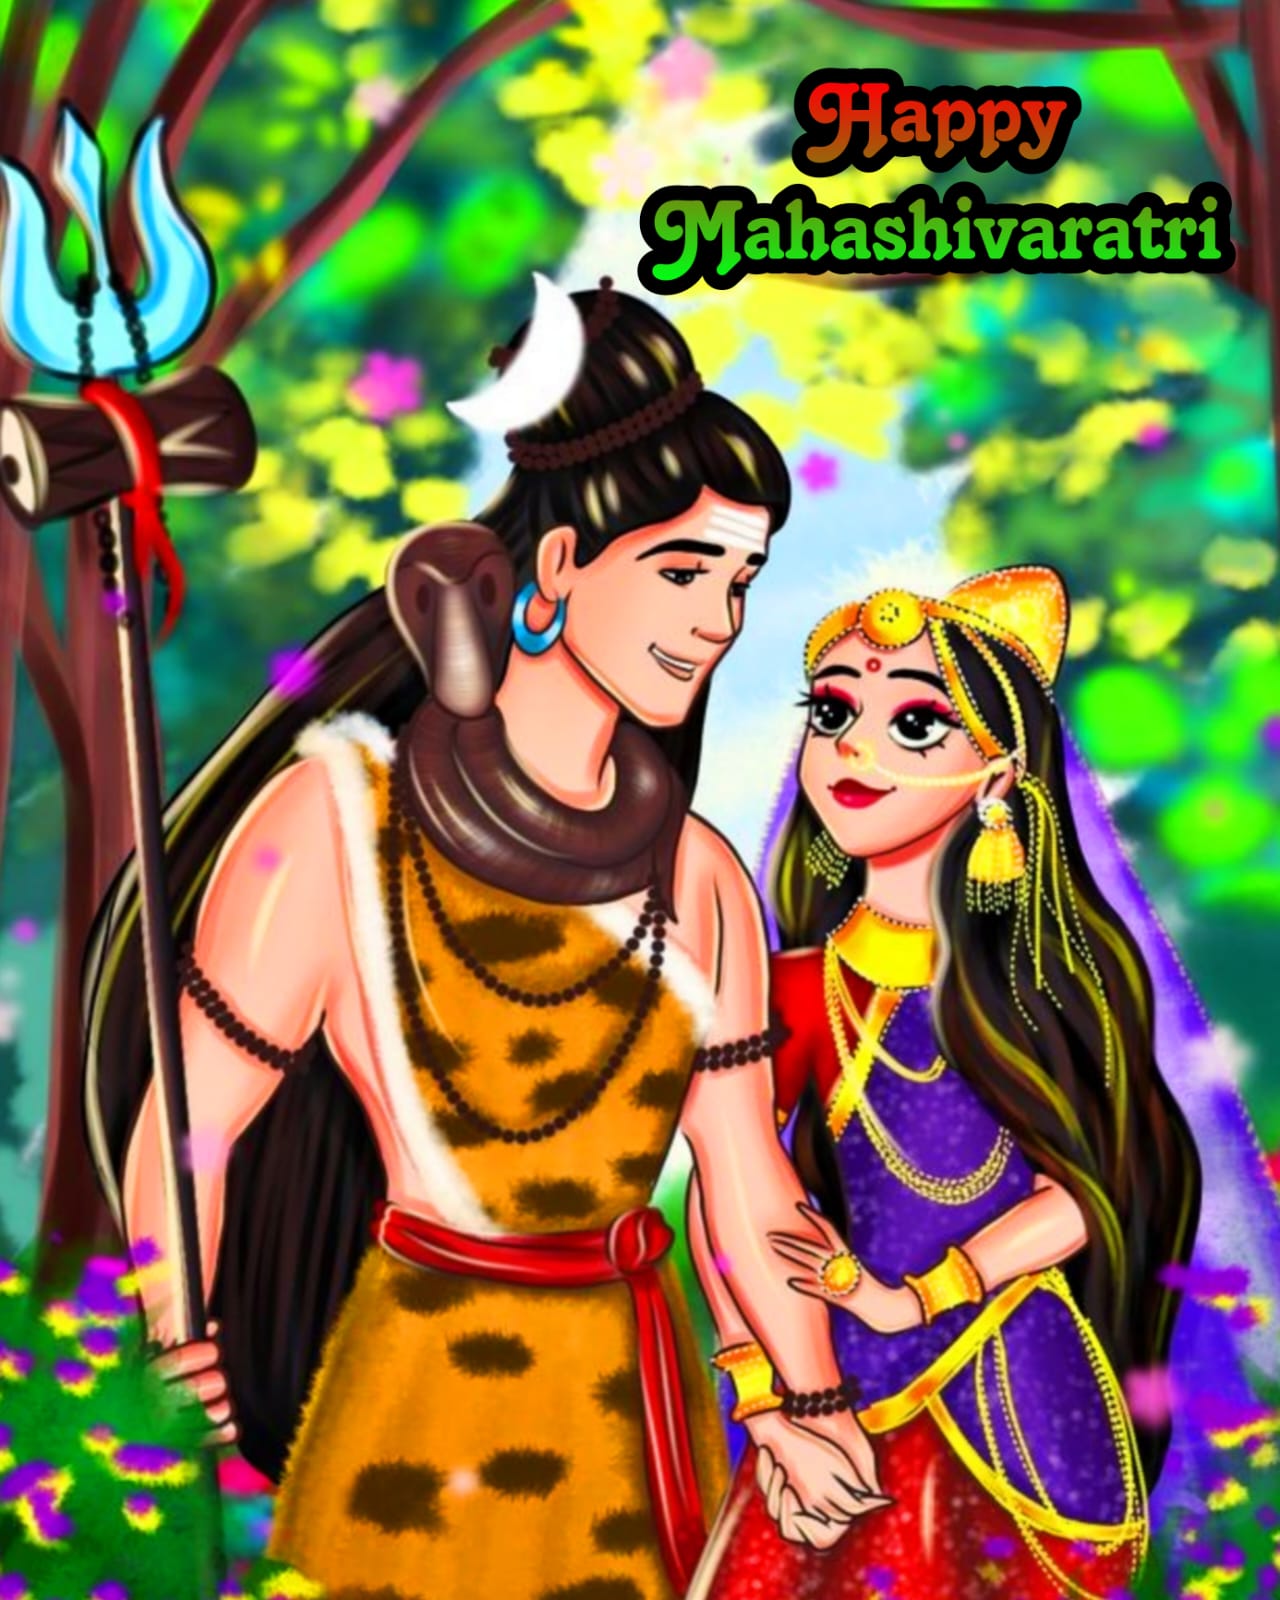 Happy Maha Shivratri photo images wallpapers in Hindi